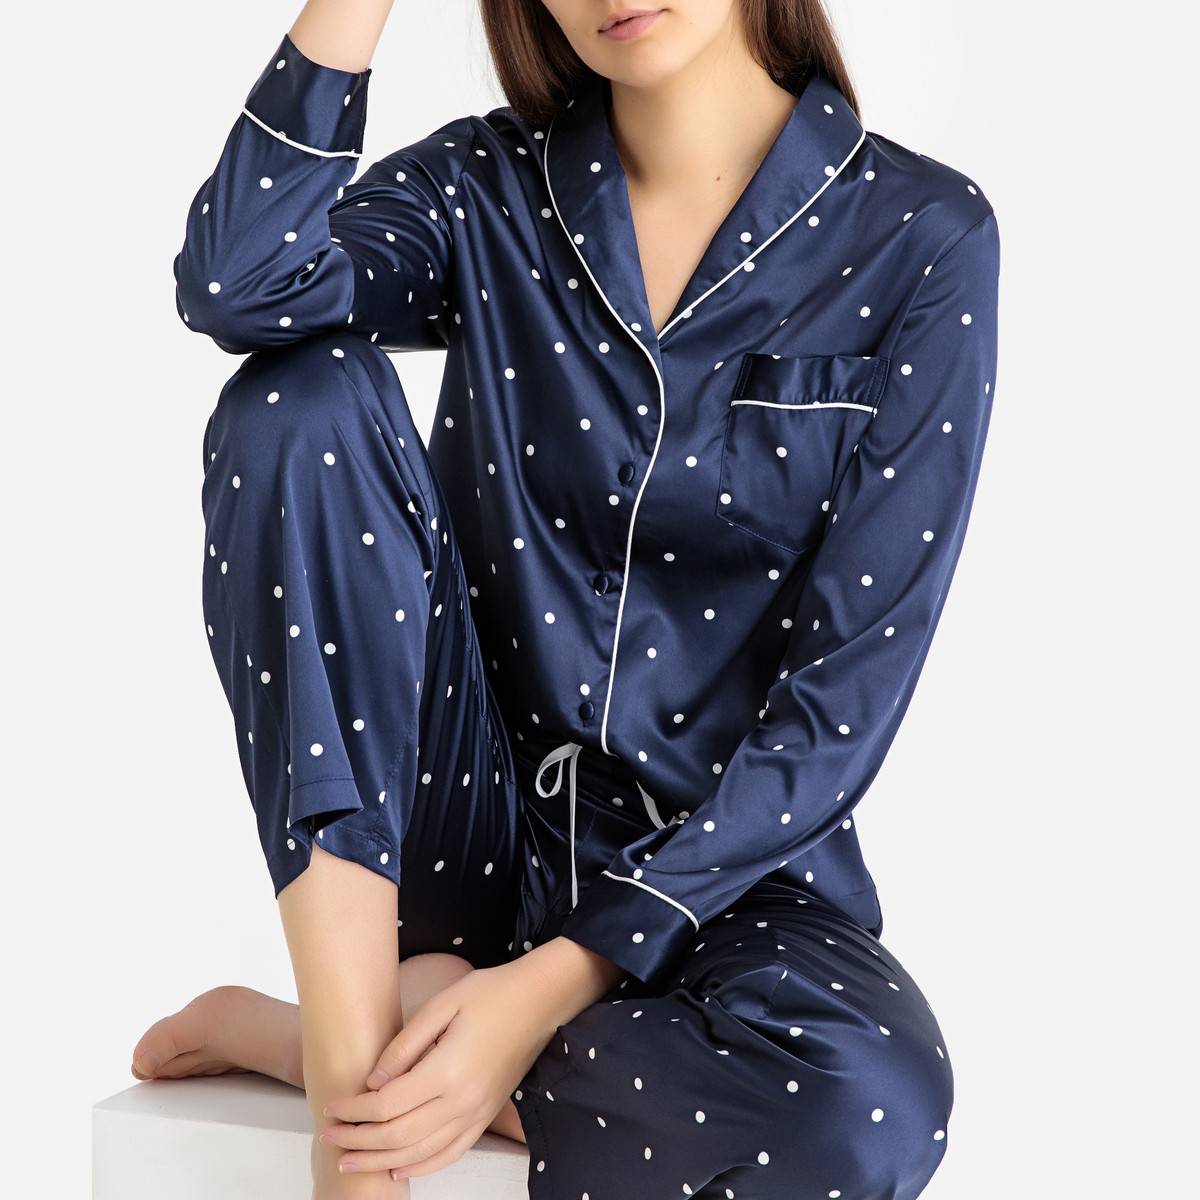 Стильные пижамы. La Redoute пижама. Женская пижама ля редут синяя. Жена в пижаме. Модные пижамы.